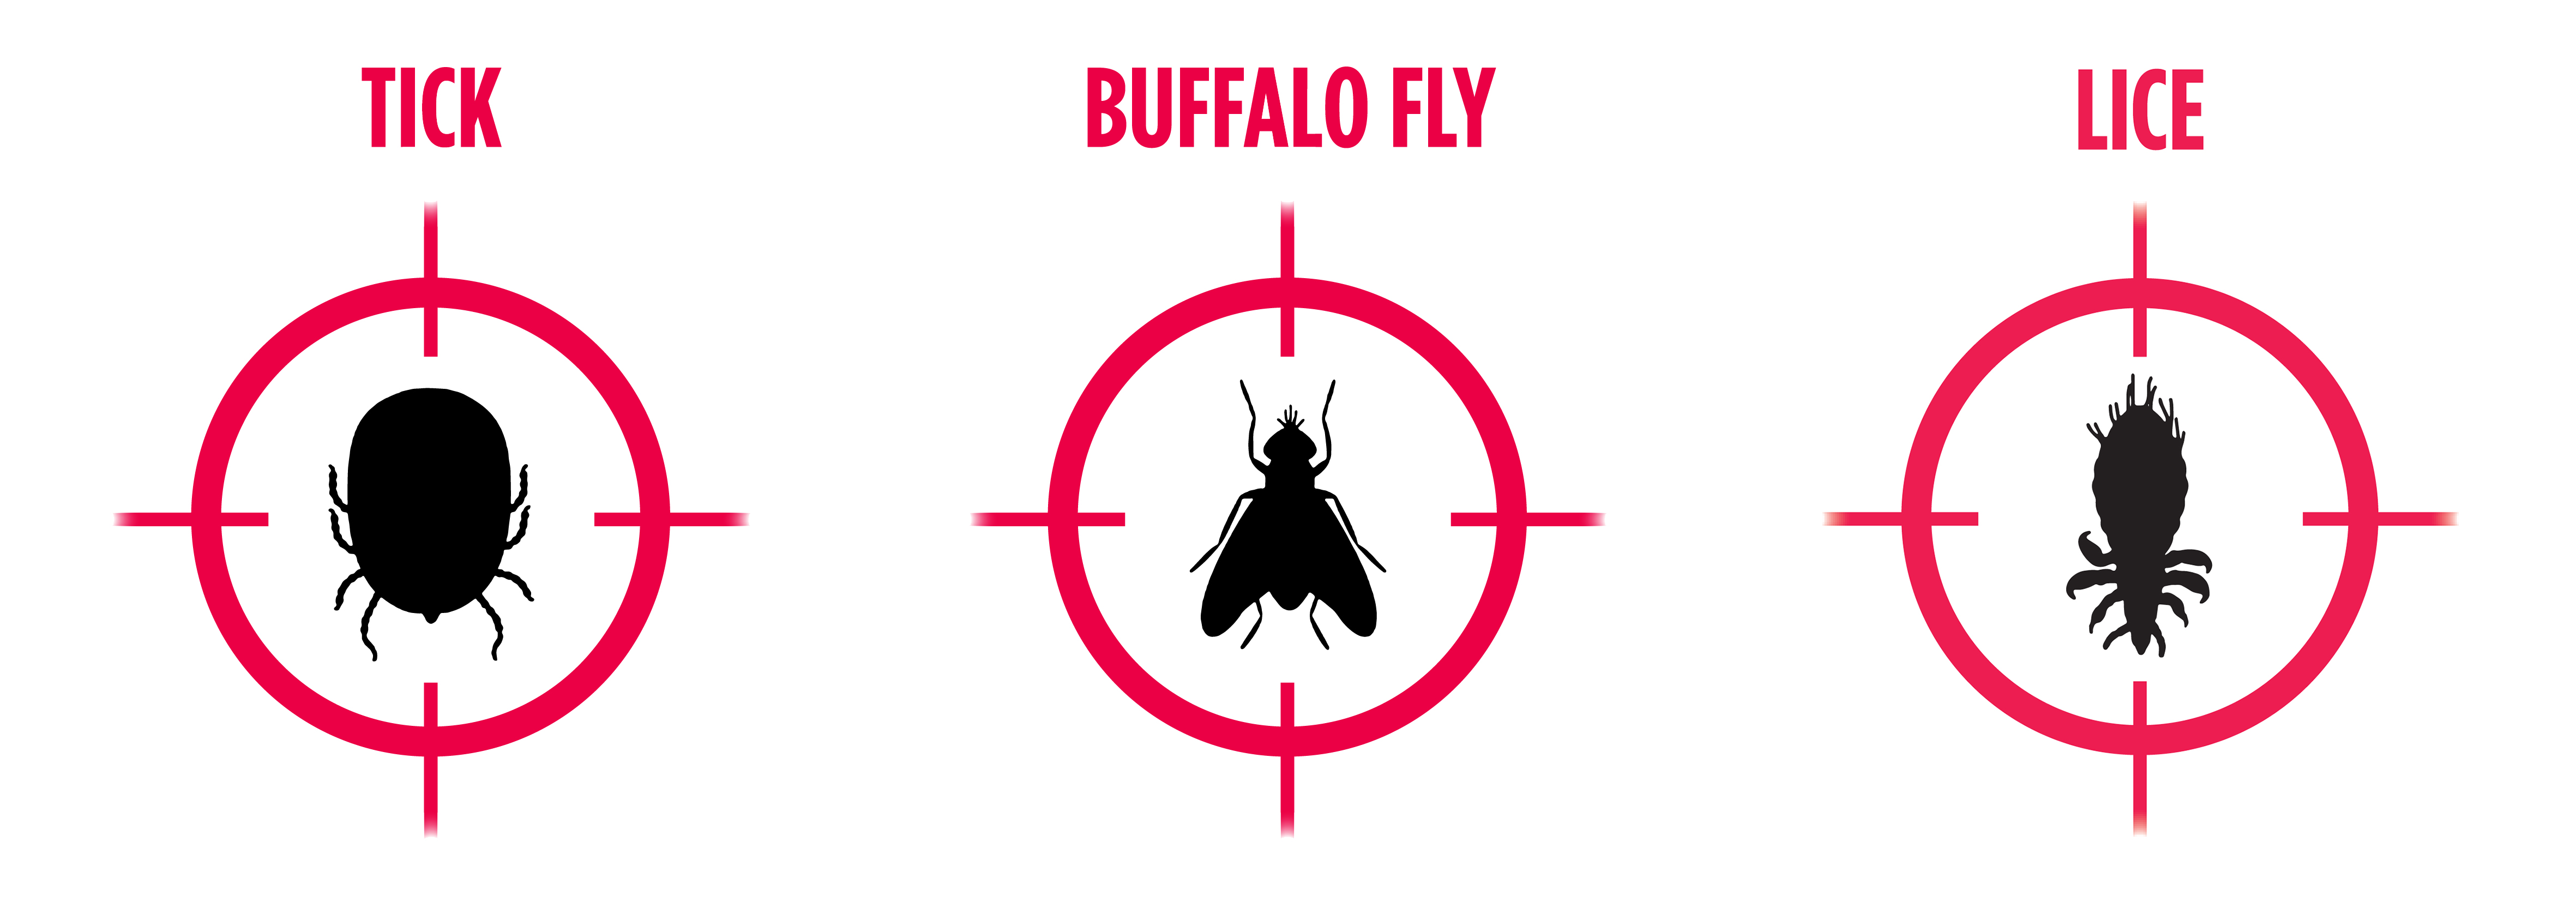 Tick_Buffalo_Fly_Lice_Icons